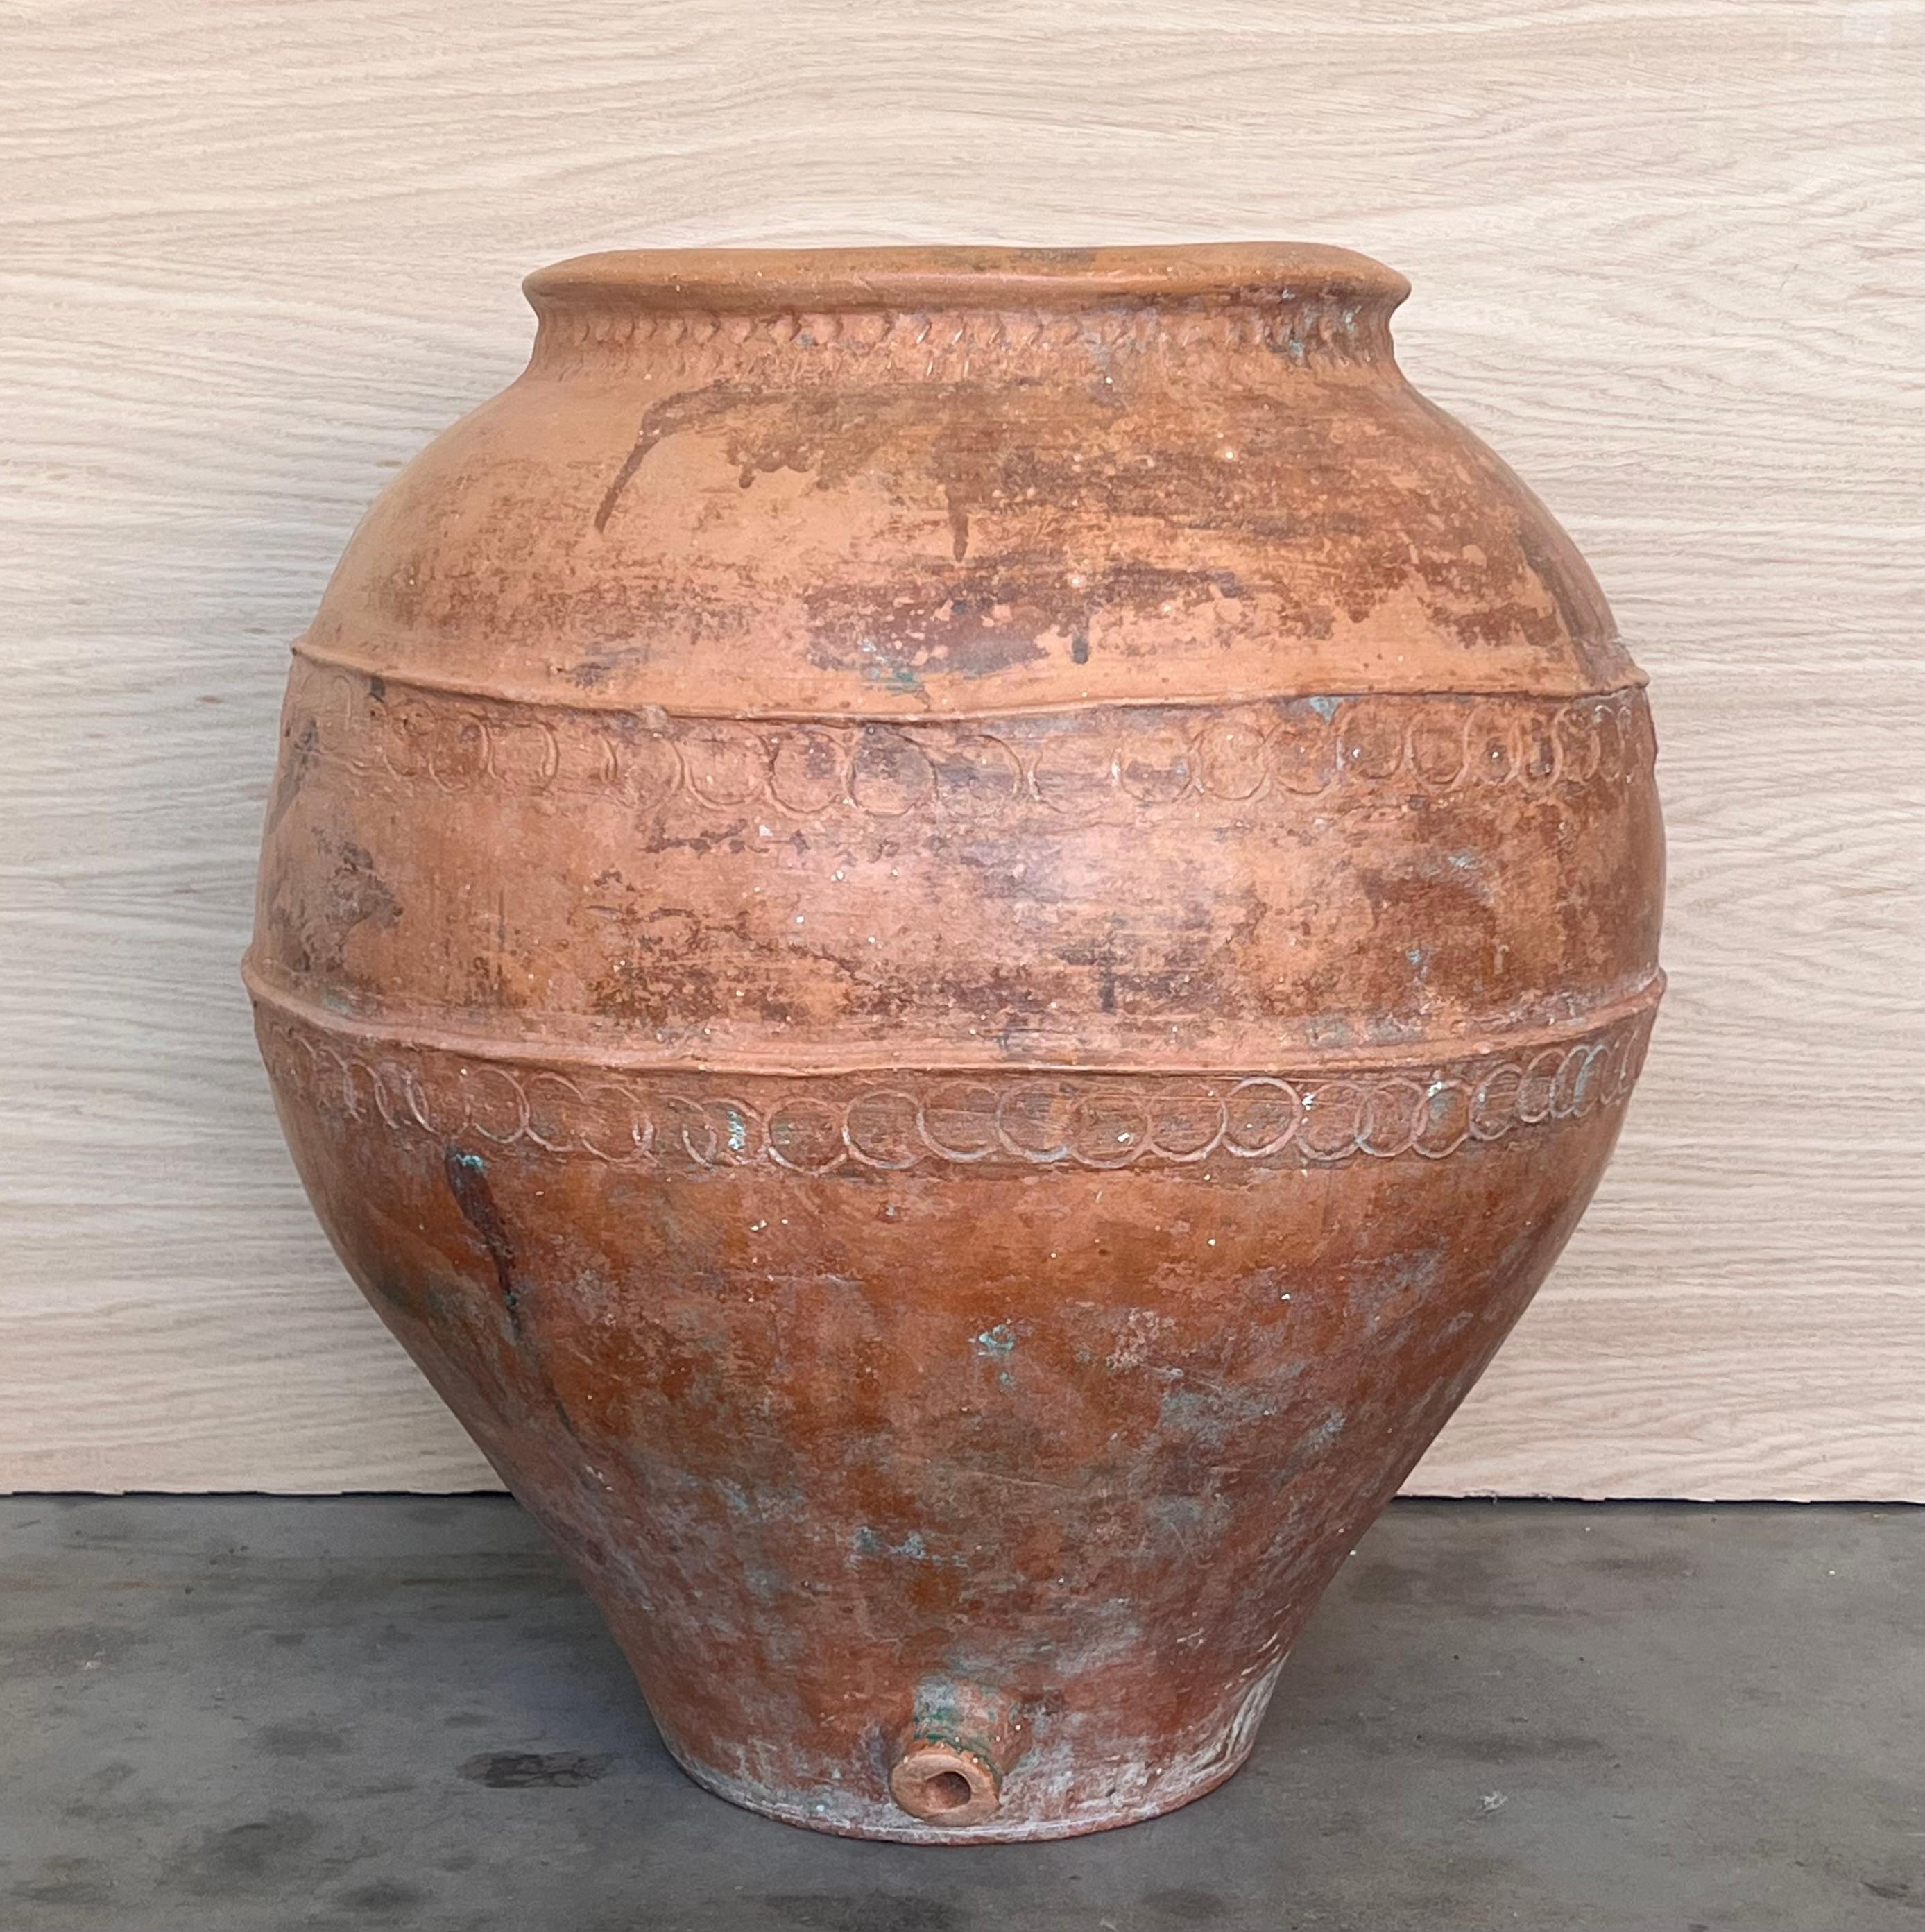 Vase espagnol en terre cuite du XVIe siècle

Marques faites à la main autour du vase. 